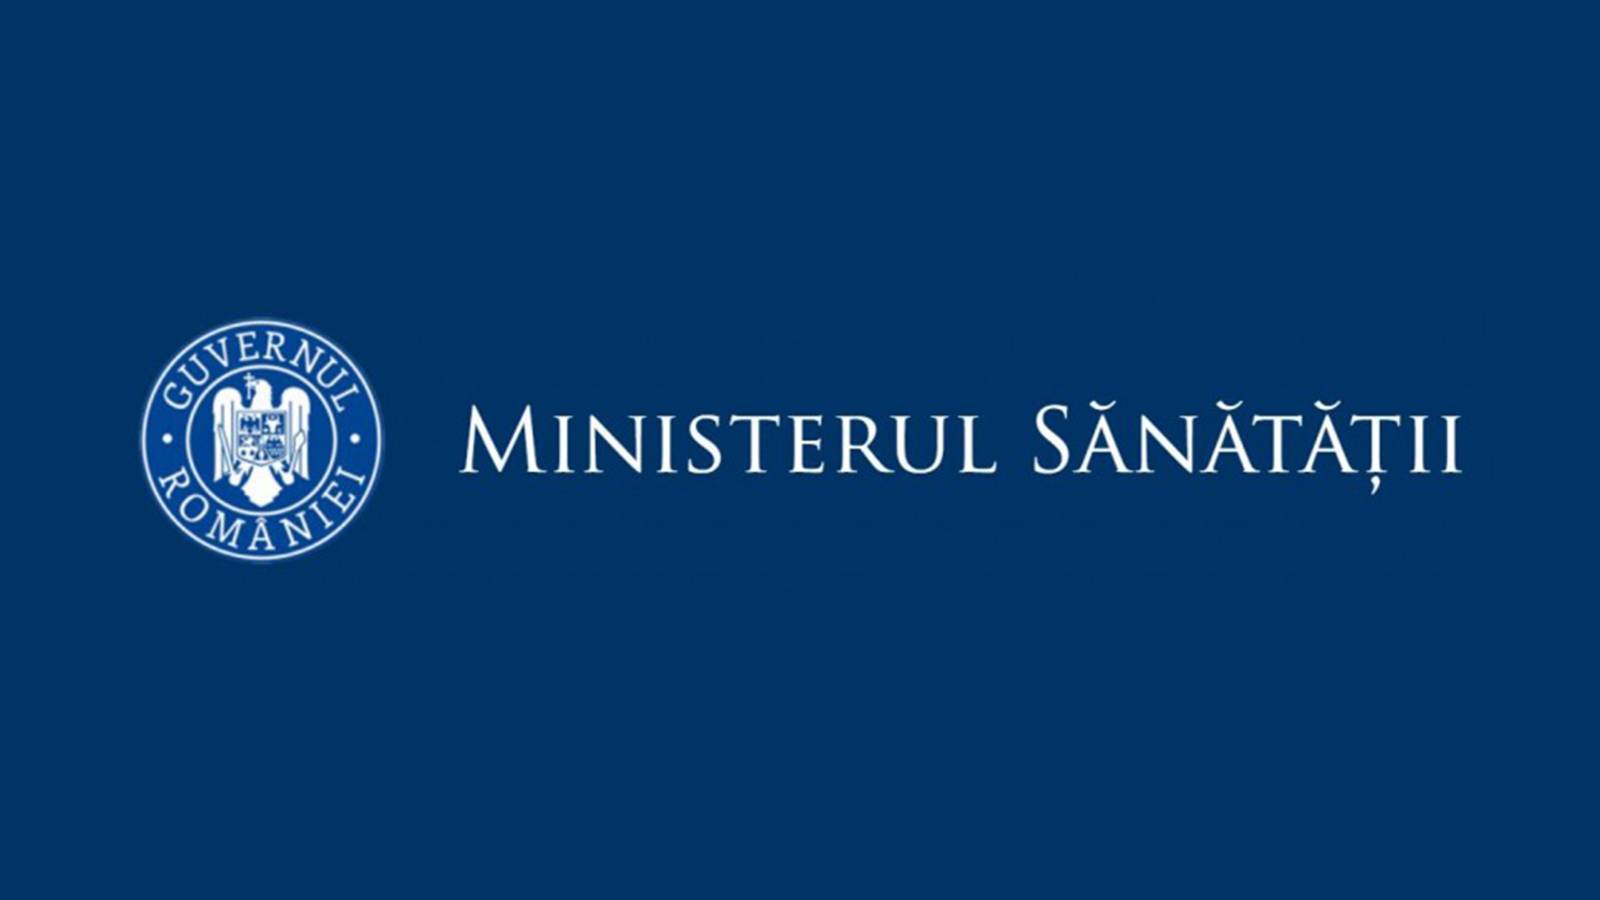 Mensaje importante del Ministerio de Sanidad para millones de rumanos